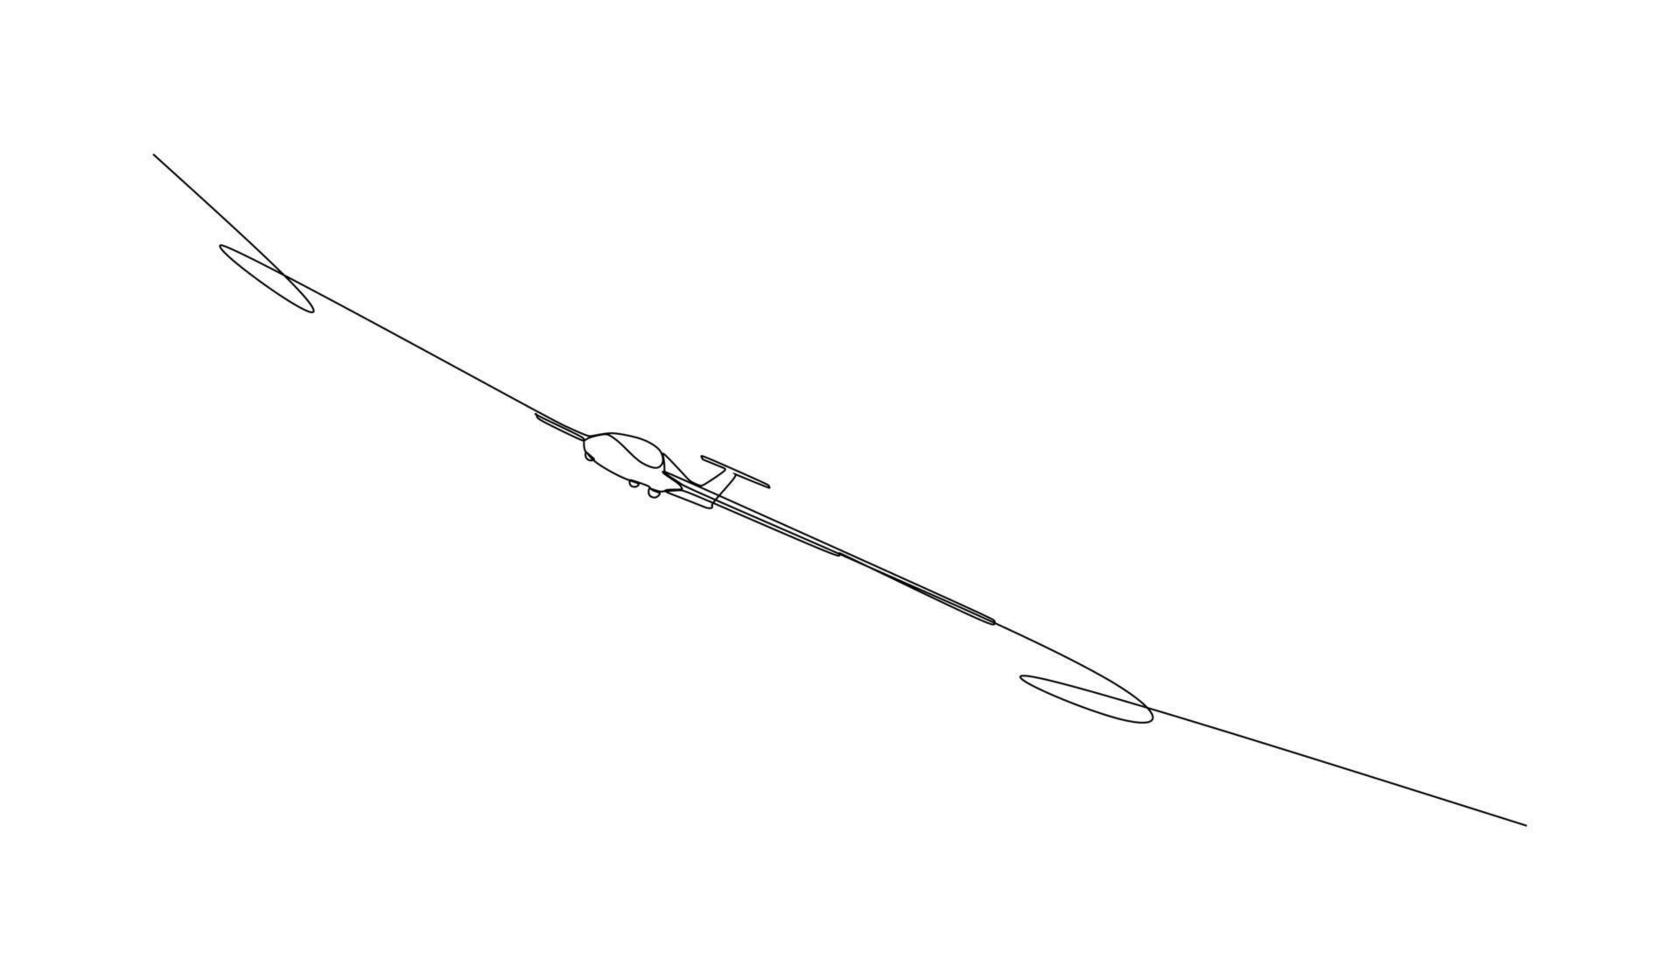 single continuous line - glider är ett flygplan med fast vingar som stöds under flygning av luftens dynamiska reaktion mot dess lyftytor. illustration för transport och teknik vektor